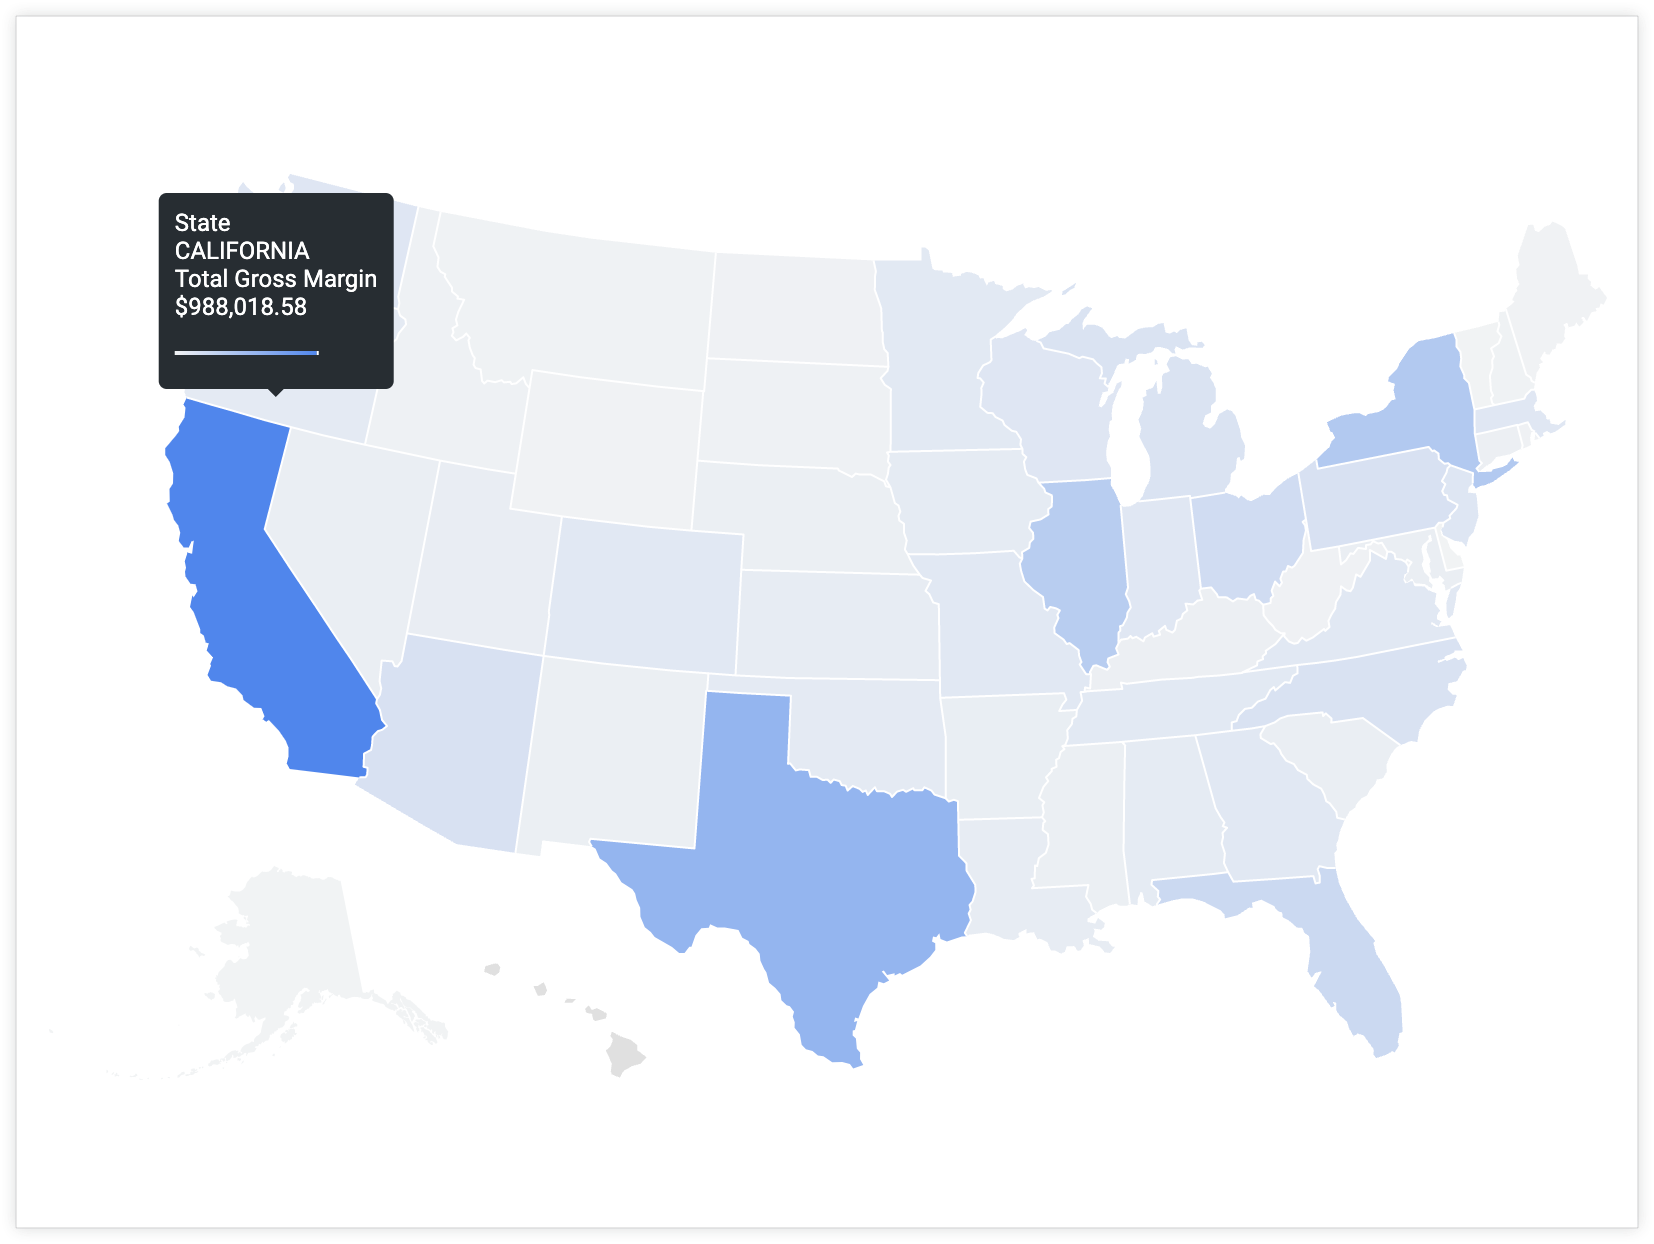 ユーザーがカリフォルニア州にカーソルを合わせると、ツールチップに州の値「カリフォルニア州」と合計総額「988,018.58ドル」が表示されます。